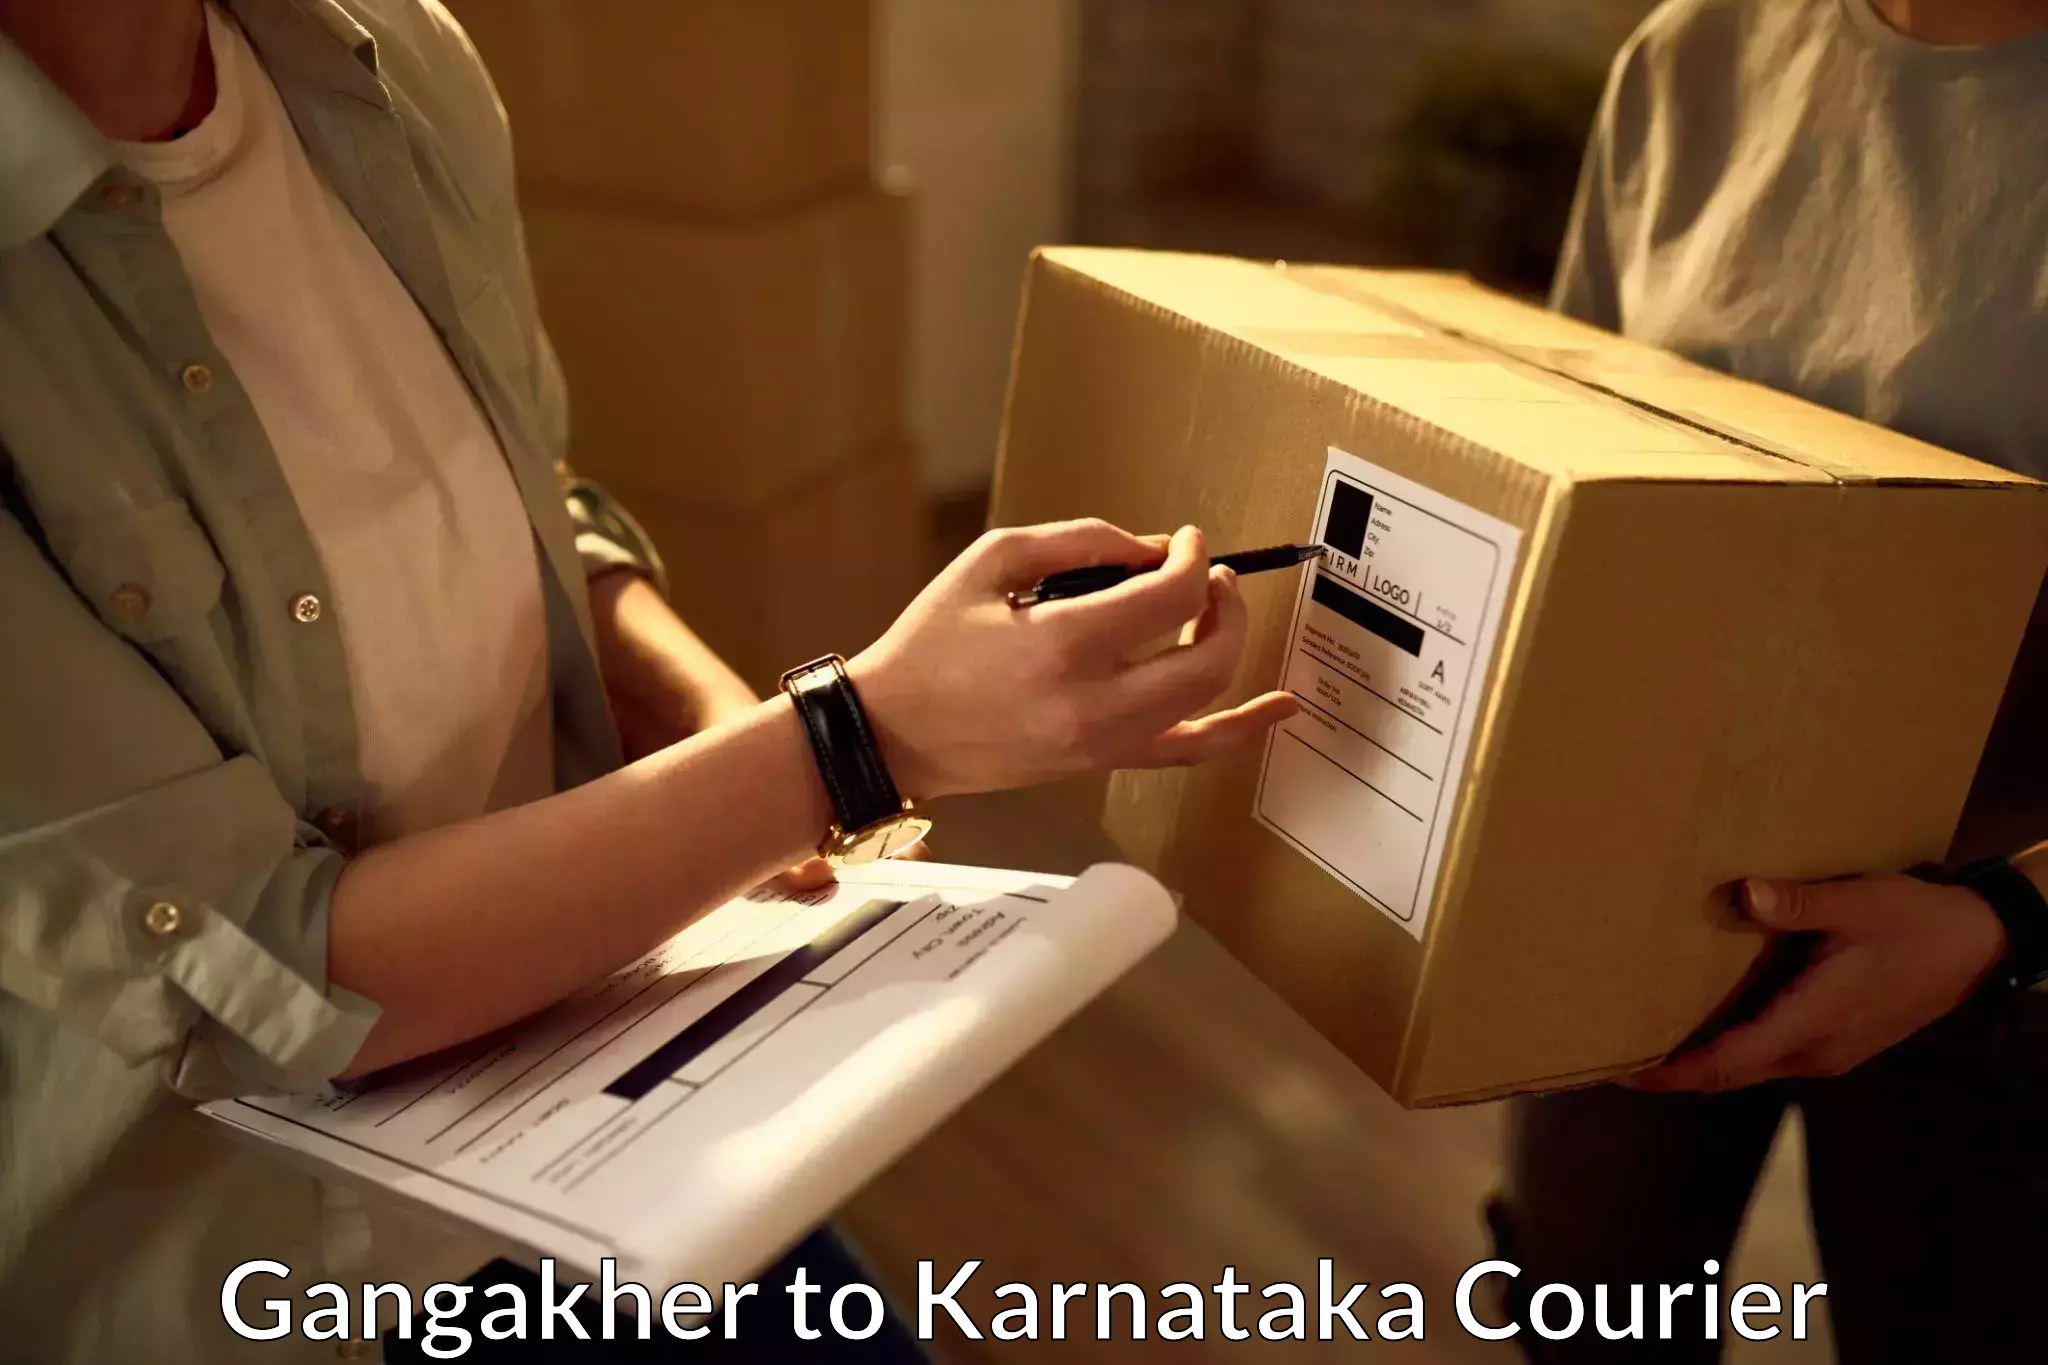 Full-service courier options Gangakher to Chikkaballapur